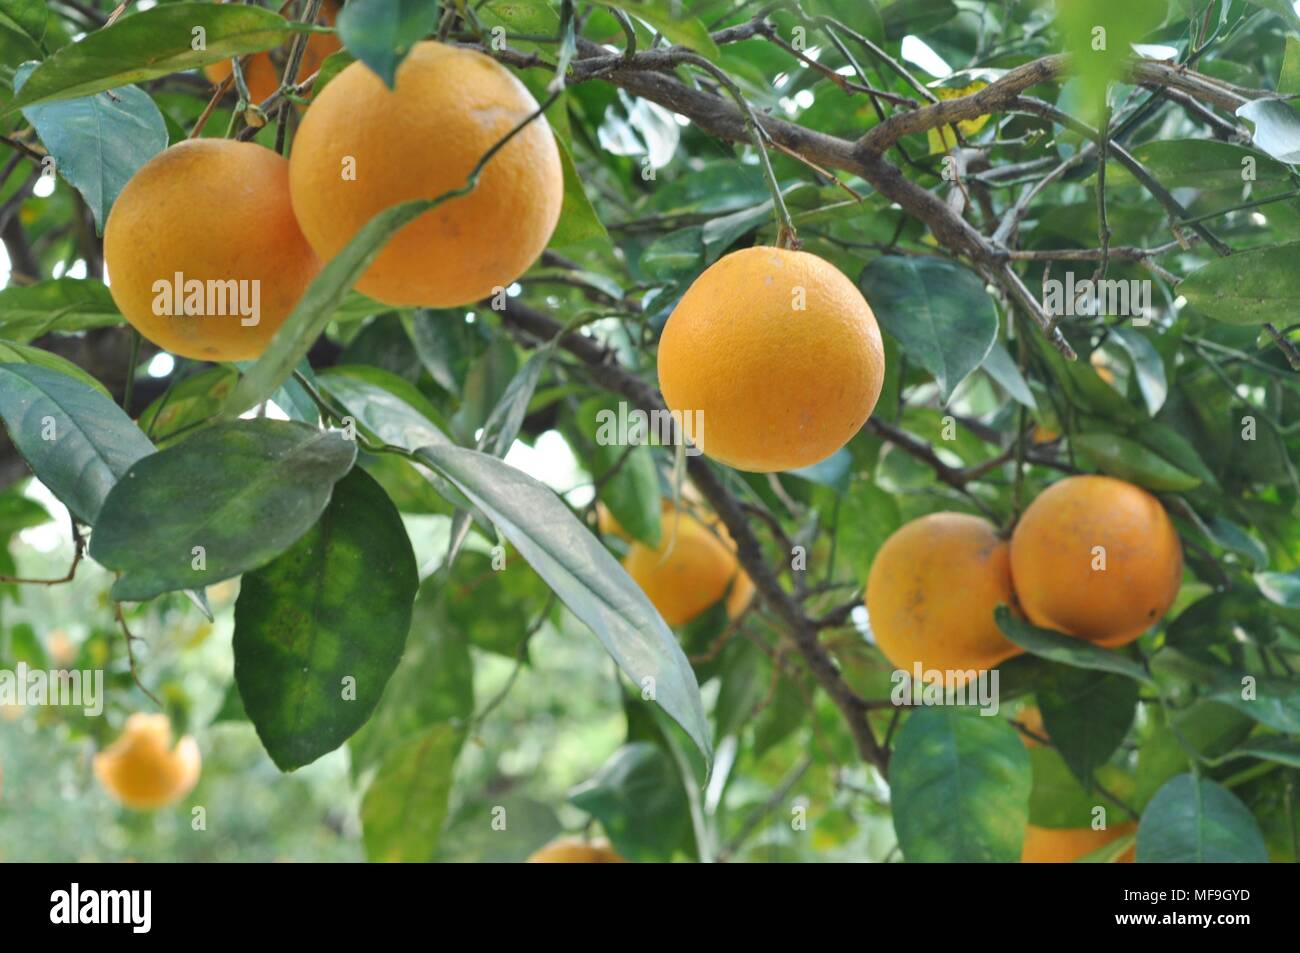 Albero carico di bei mandarini coltivati in Sicilia, Sicily, Italy Stock Photo